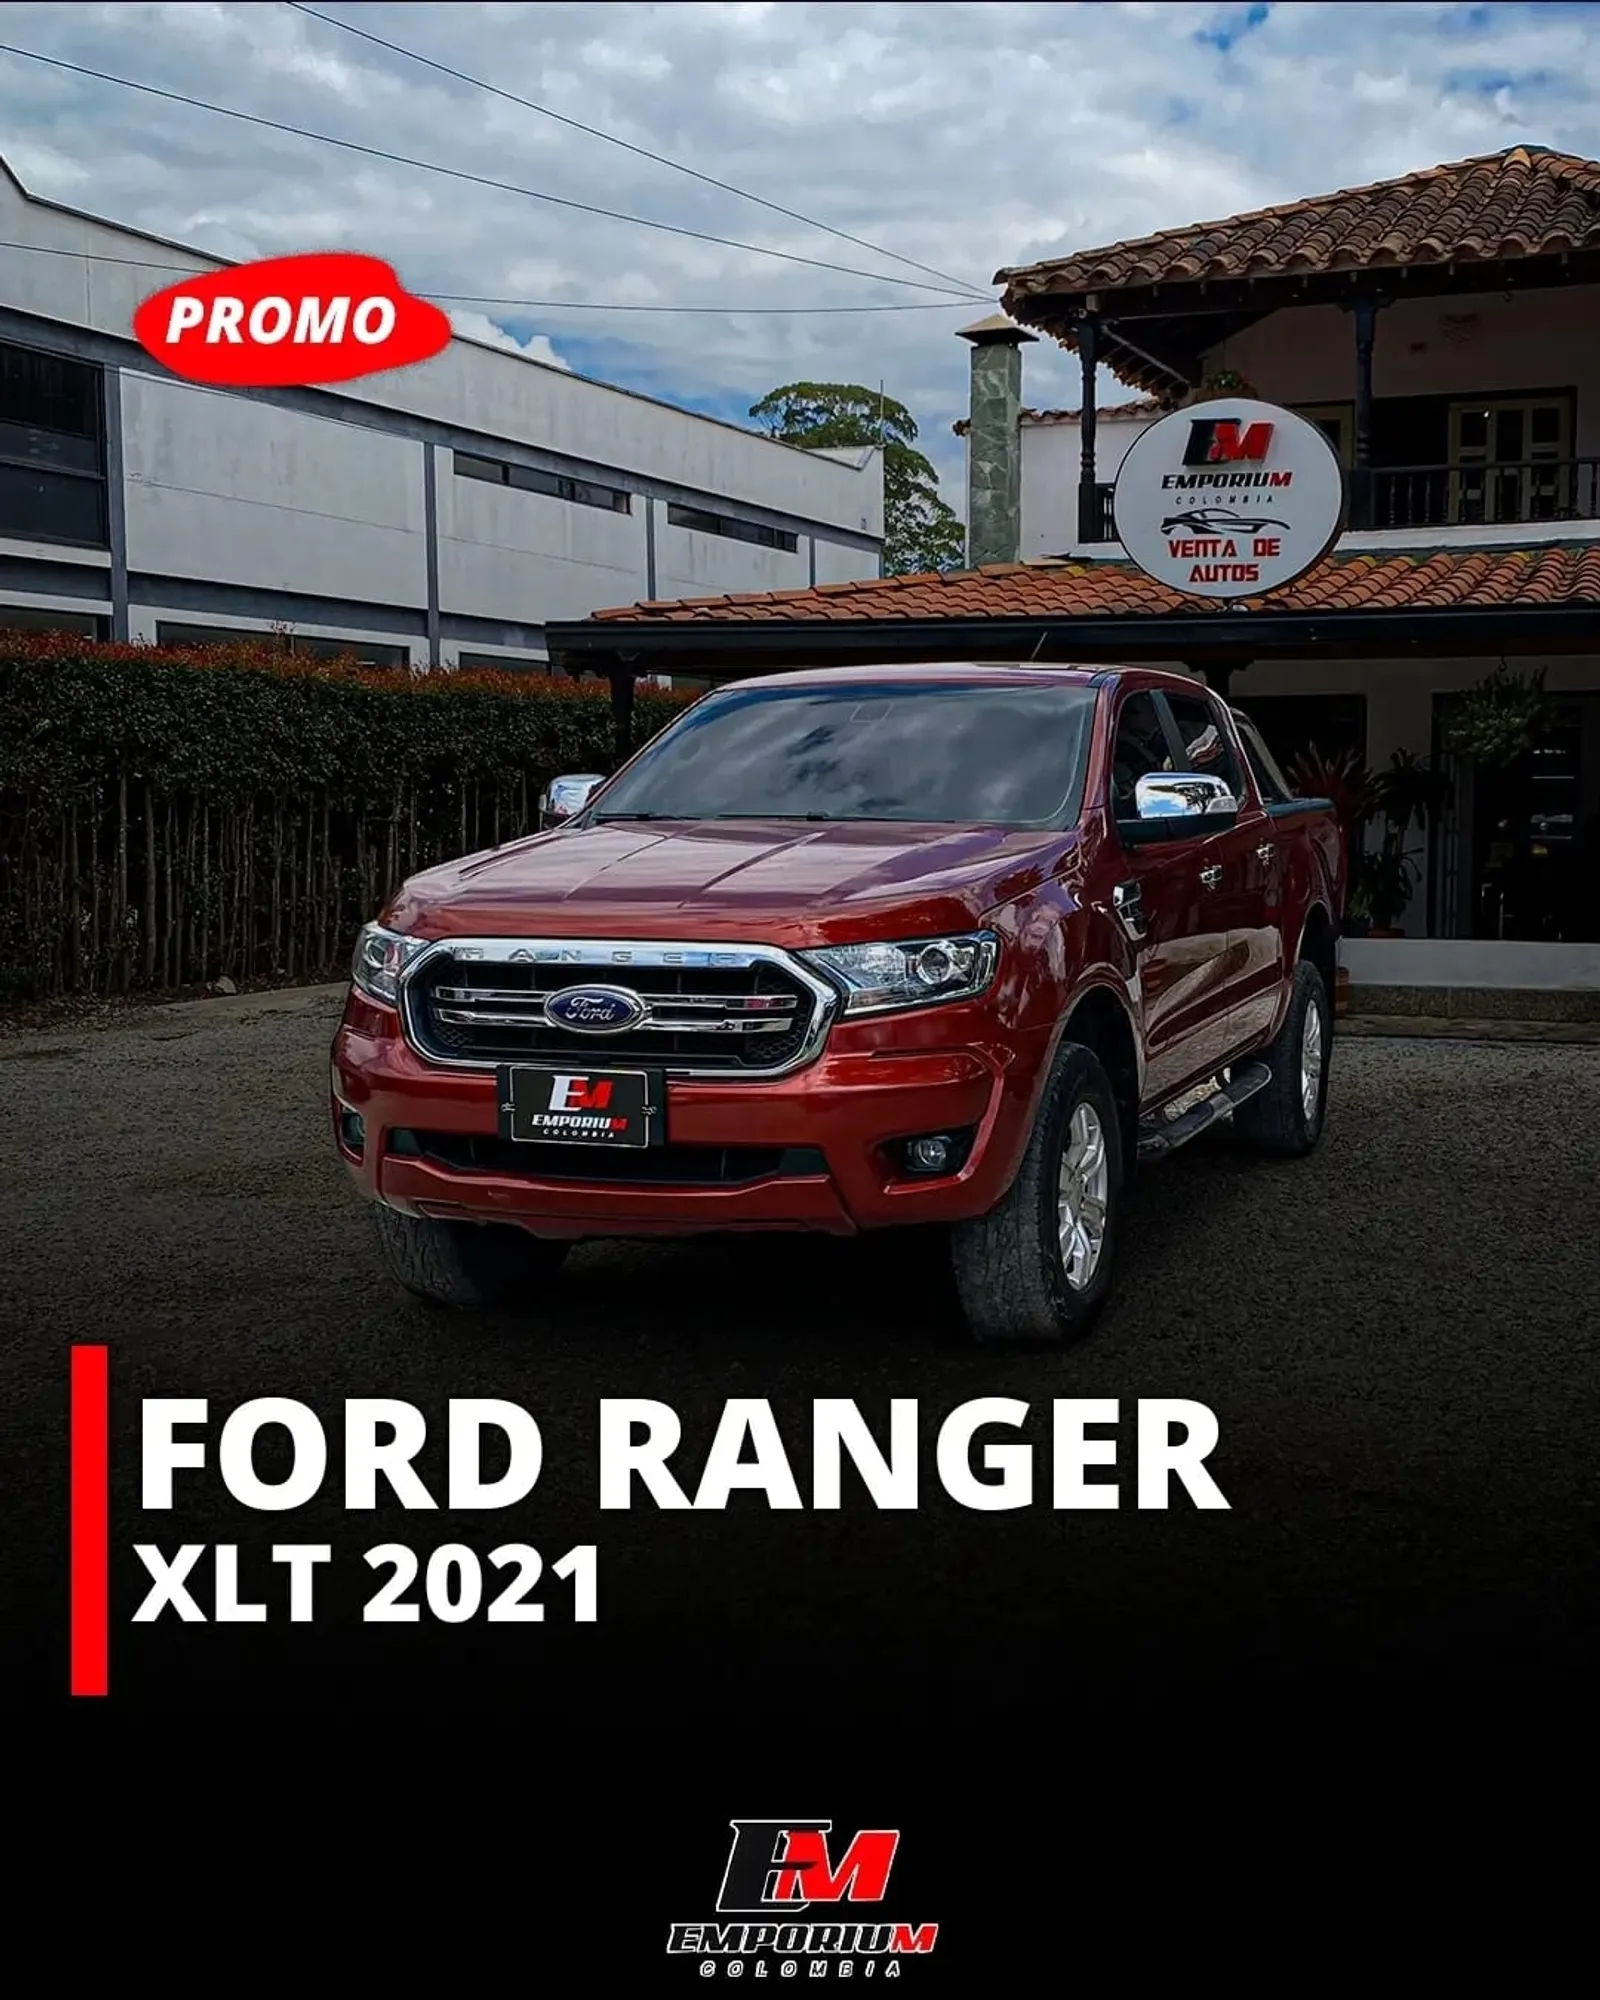 Ford Ranger XLT 2021.